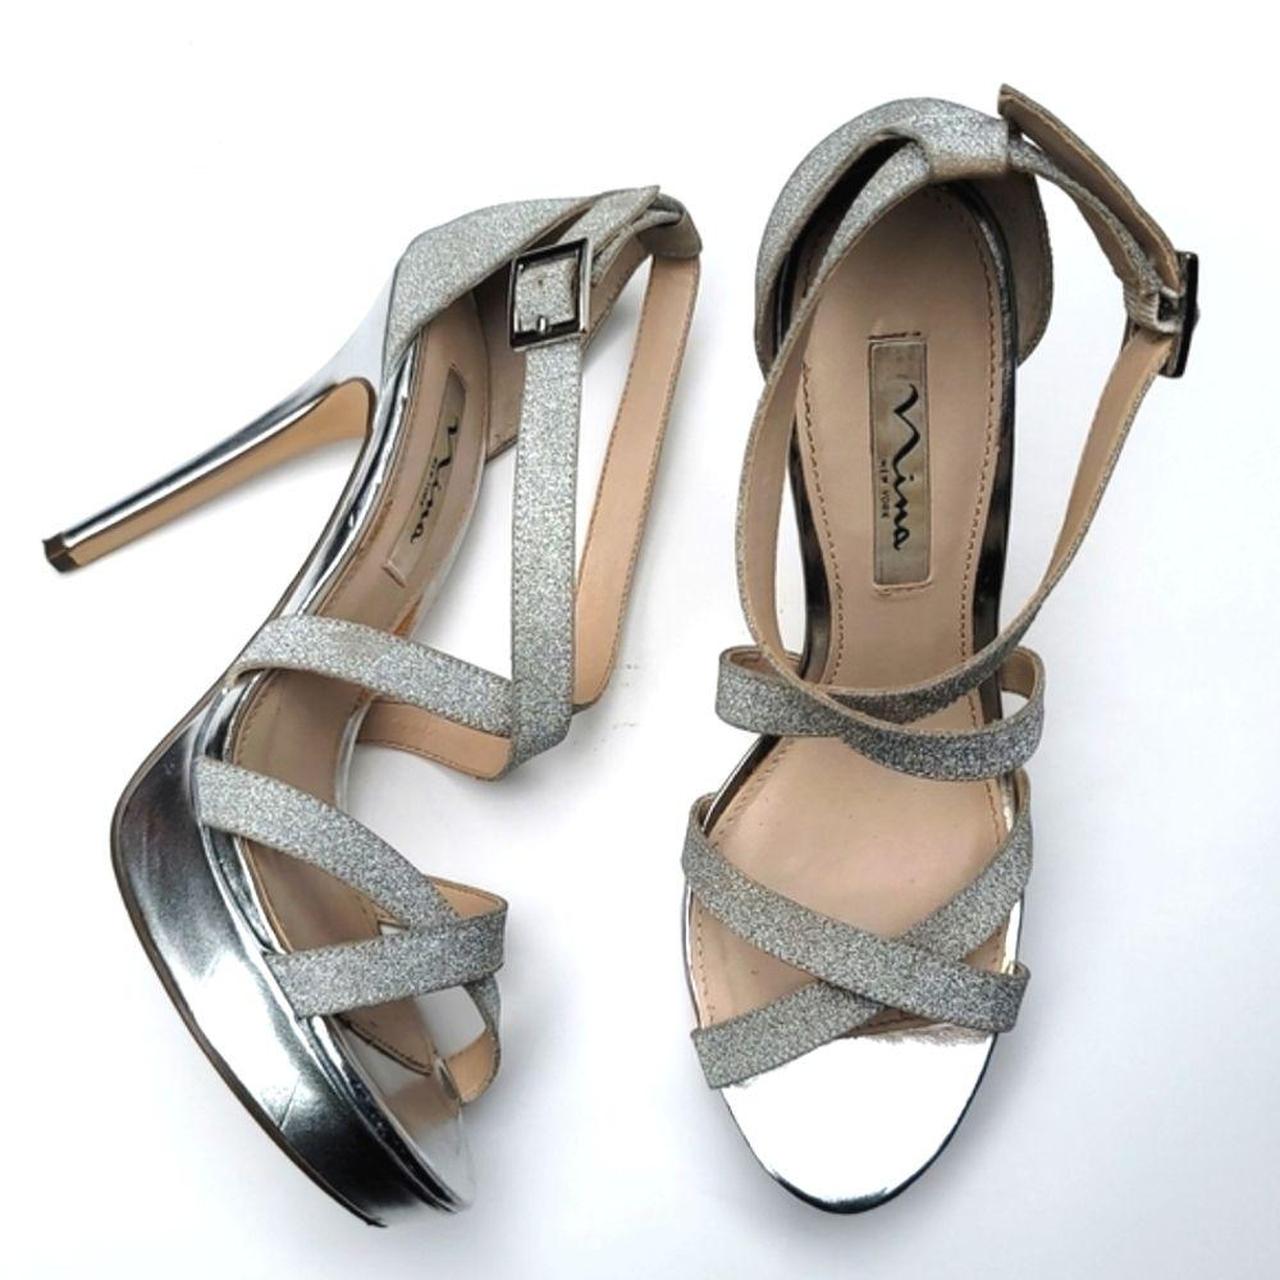 Silver Nina high heels 9.5. Good condition. has... - Depop